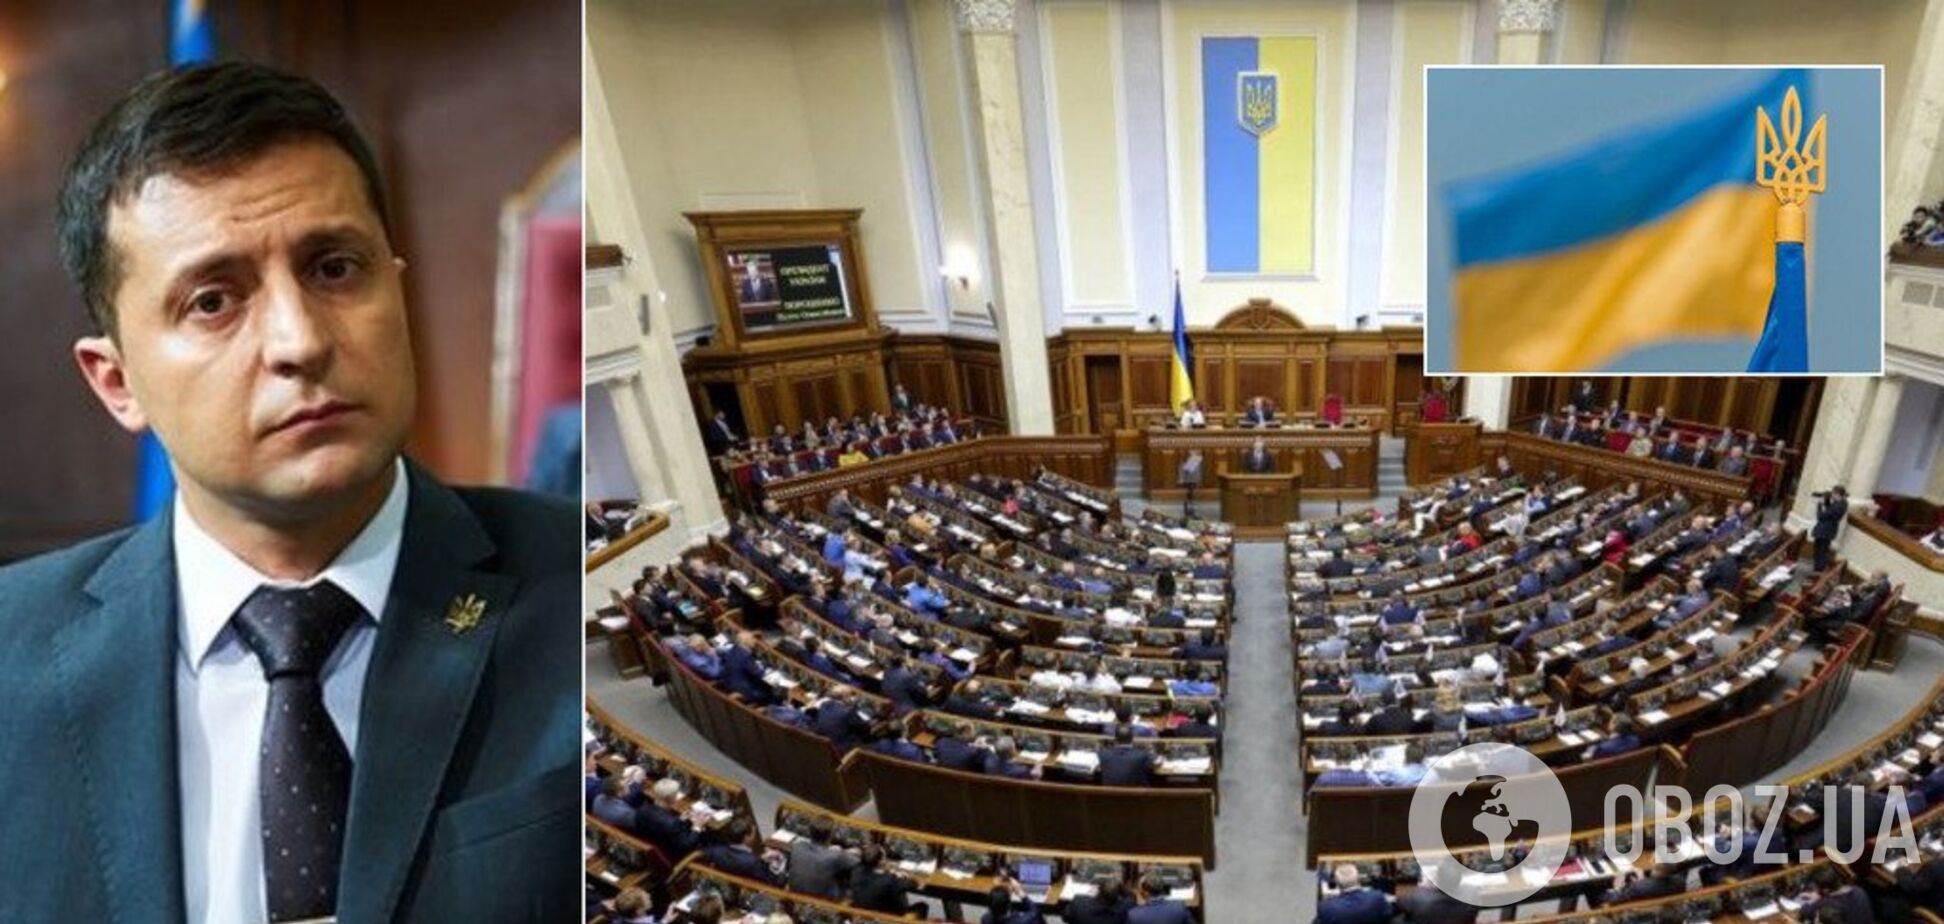 Еще одни выборы на носу? В Украине заговорили о роспуске Рады